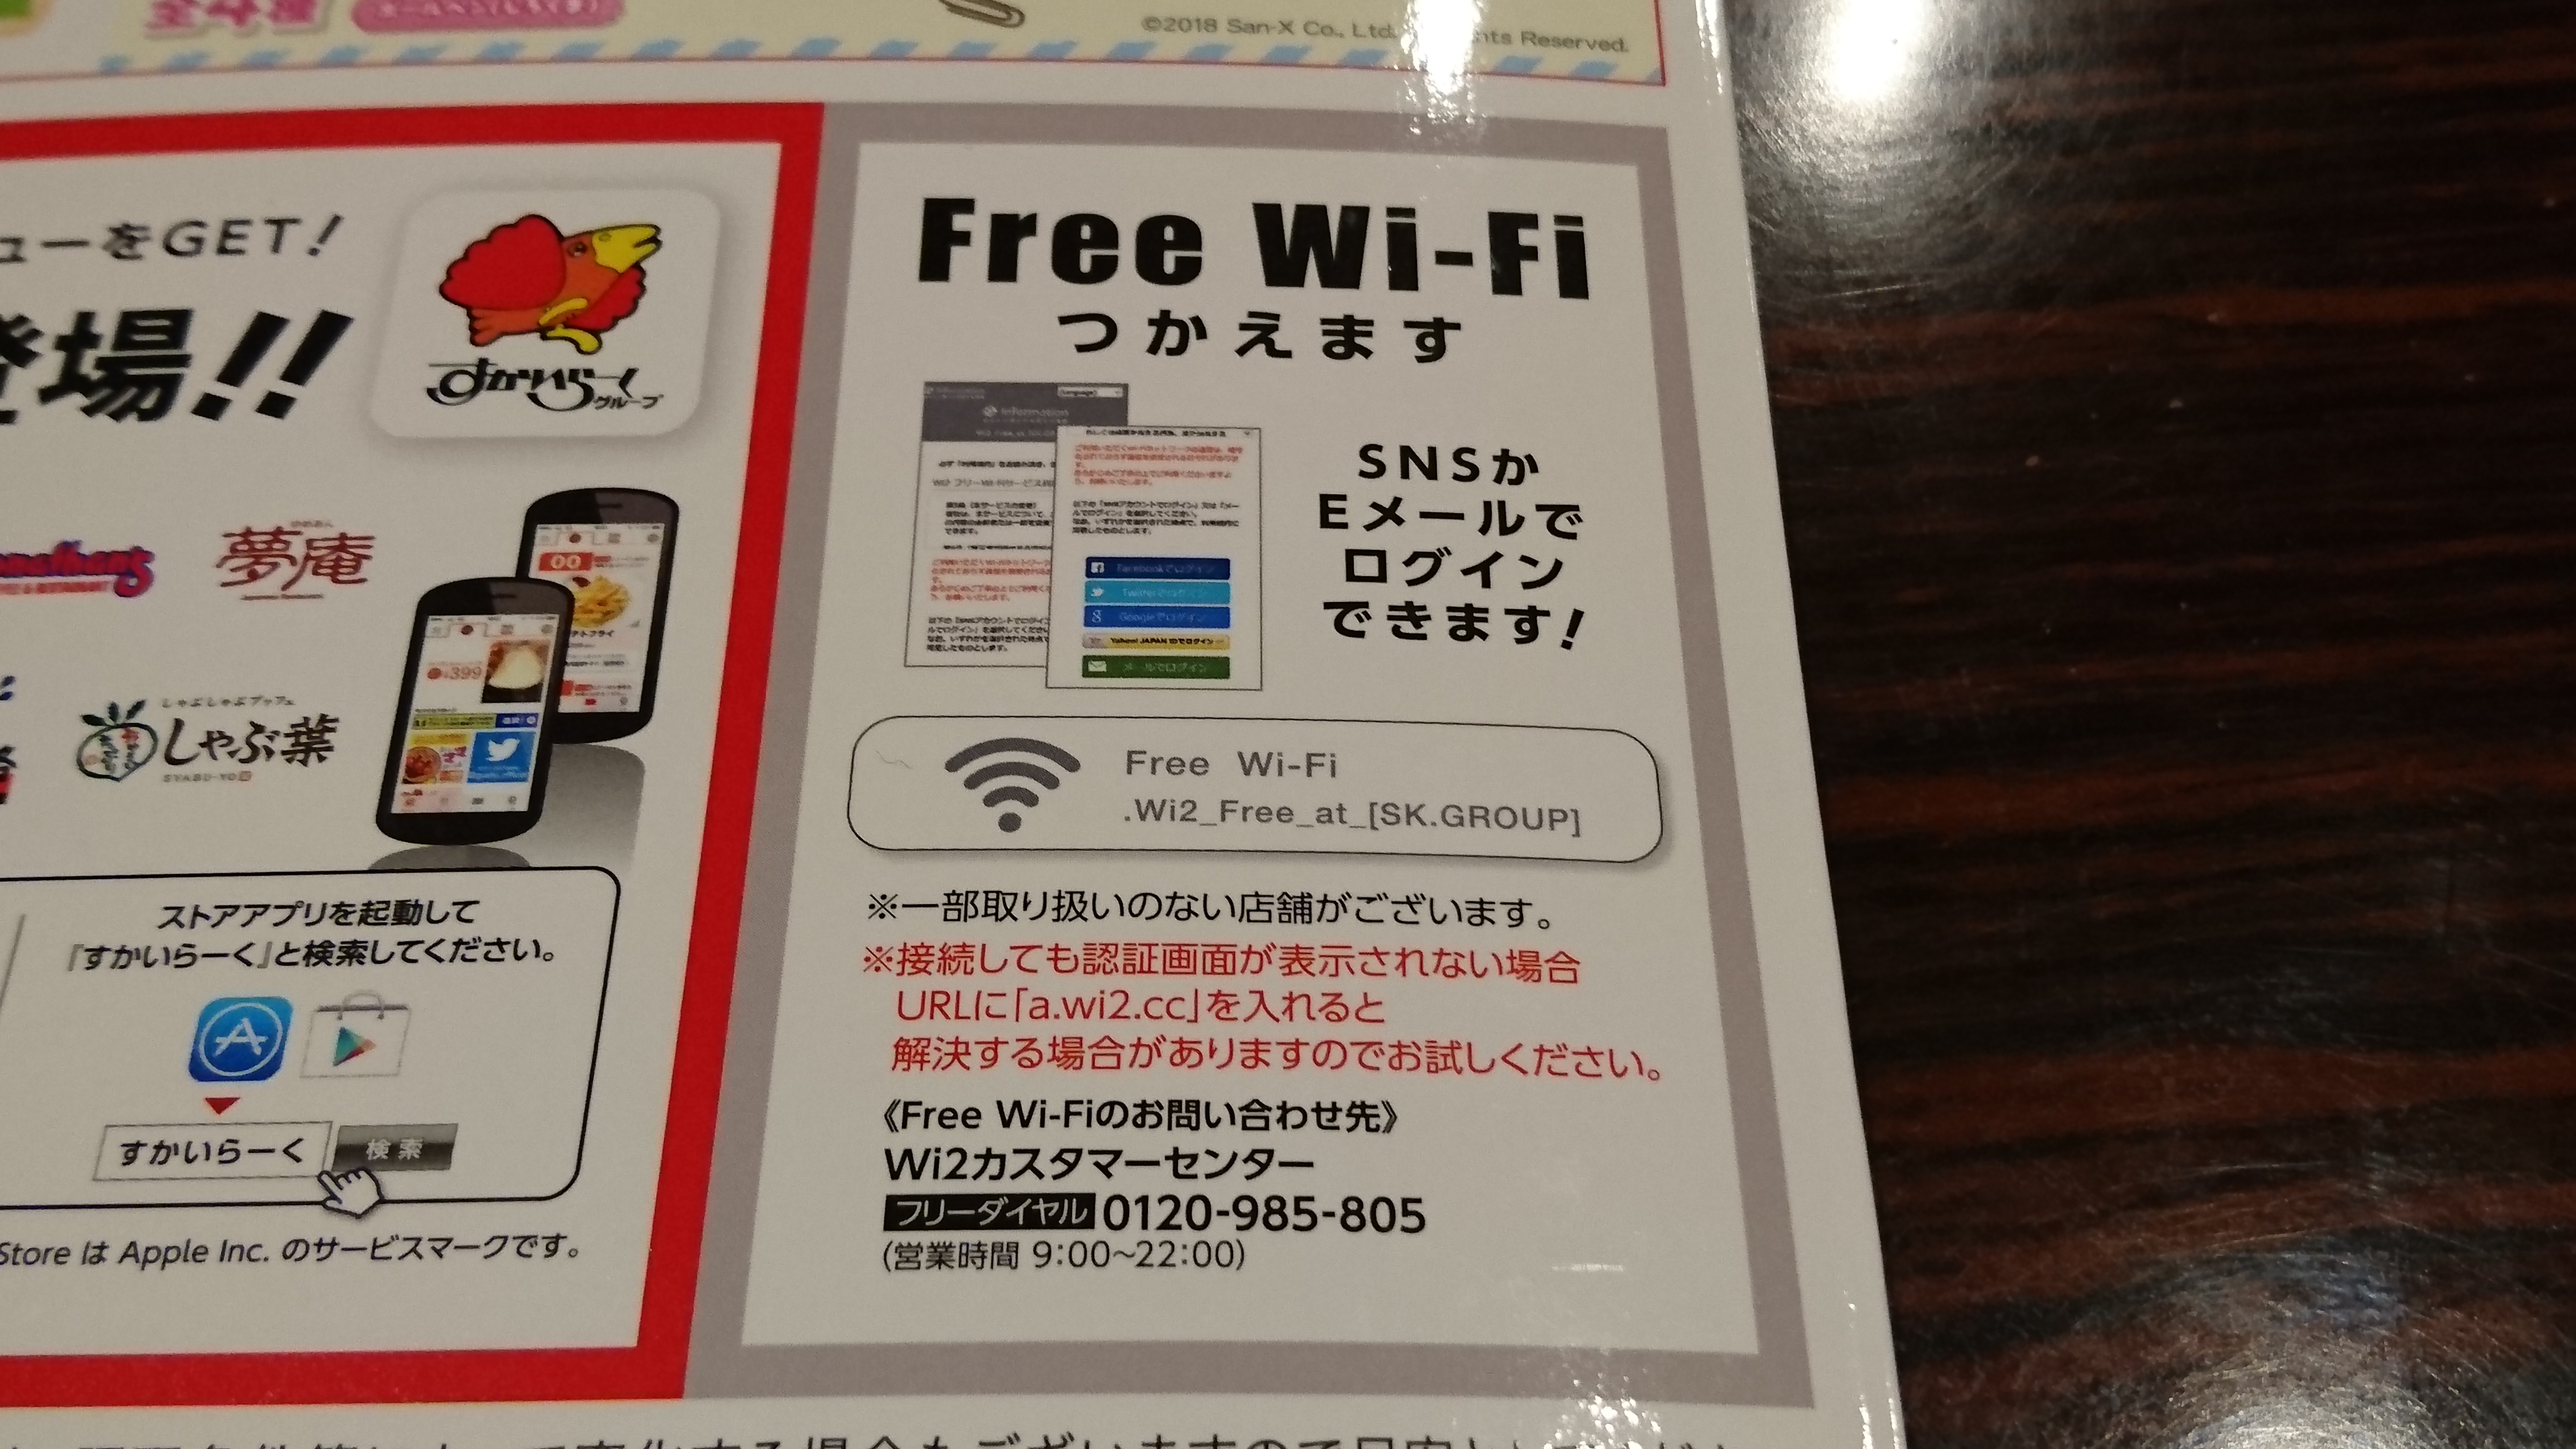 とんから亭で利用できる無料wi Fi とんから亭wi Fi の設定方法と接続手順 得北